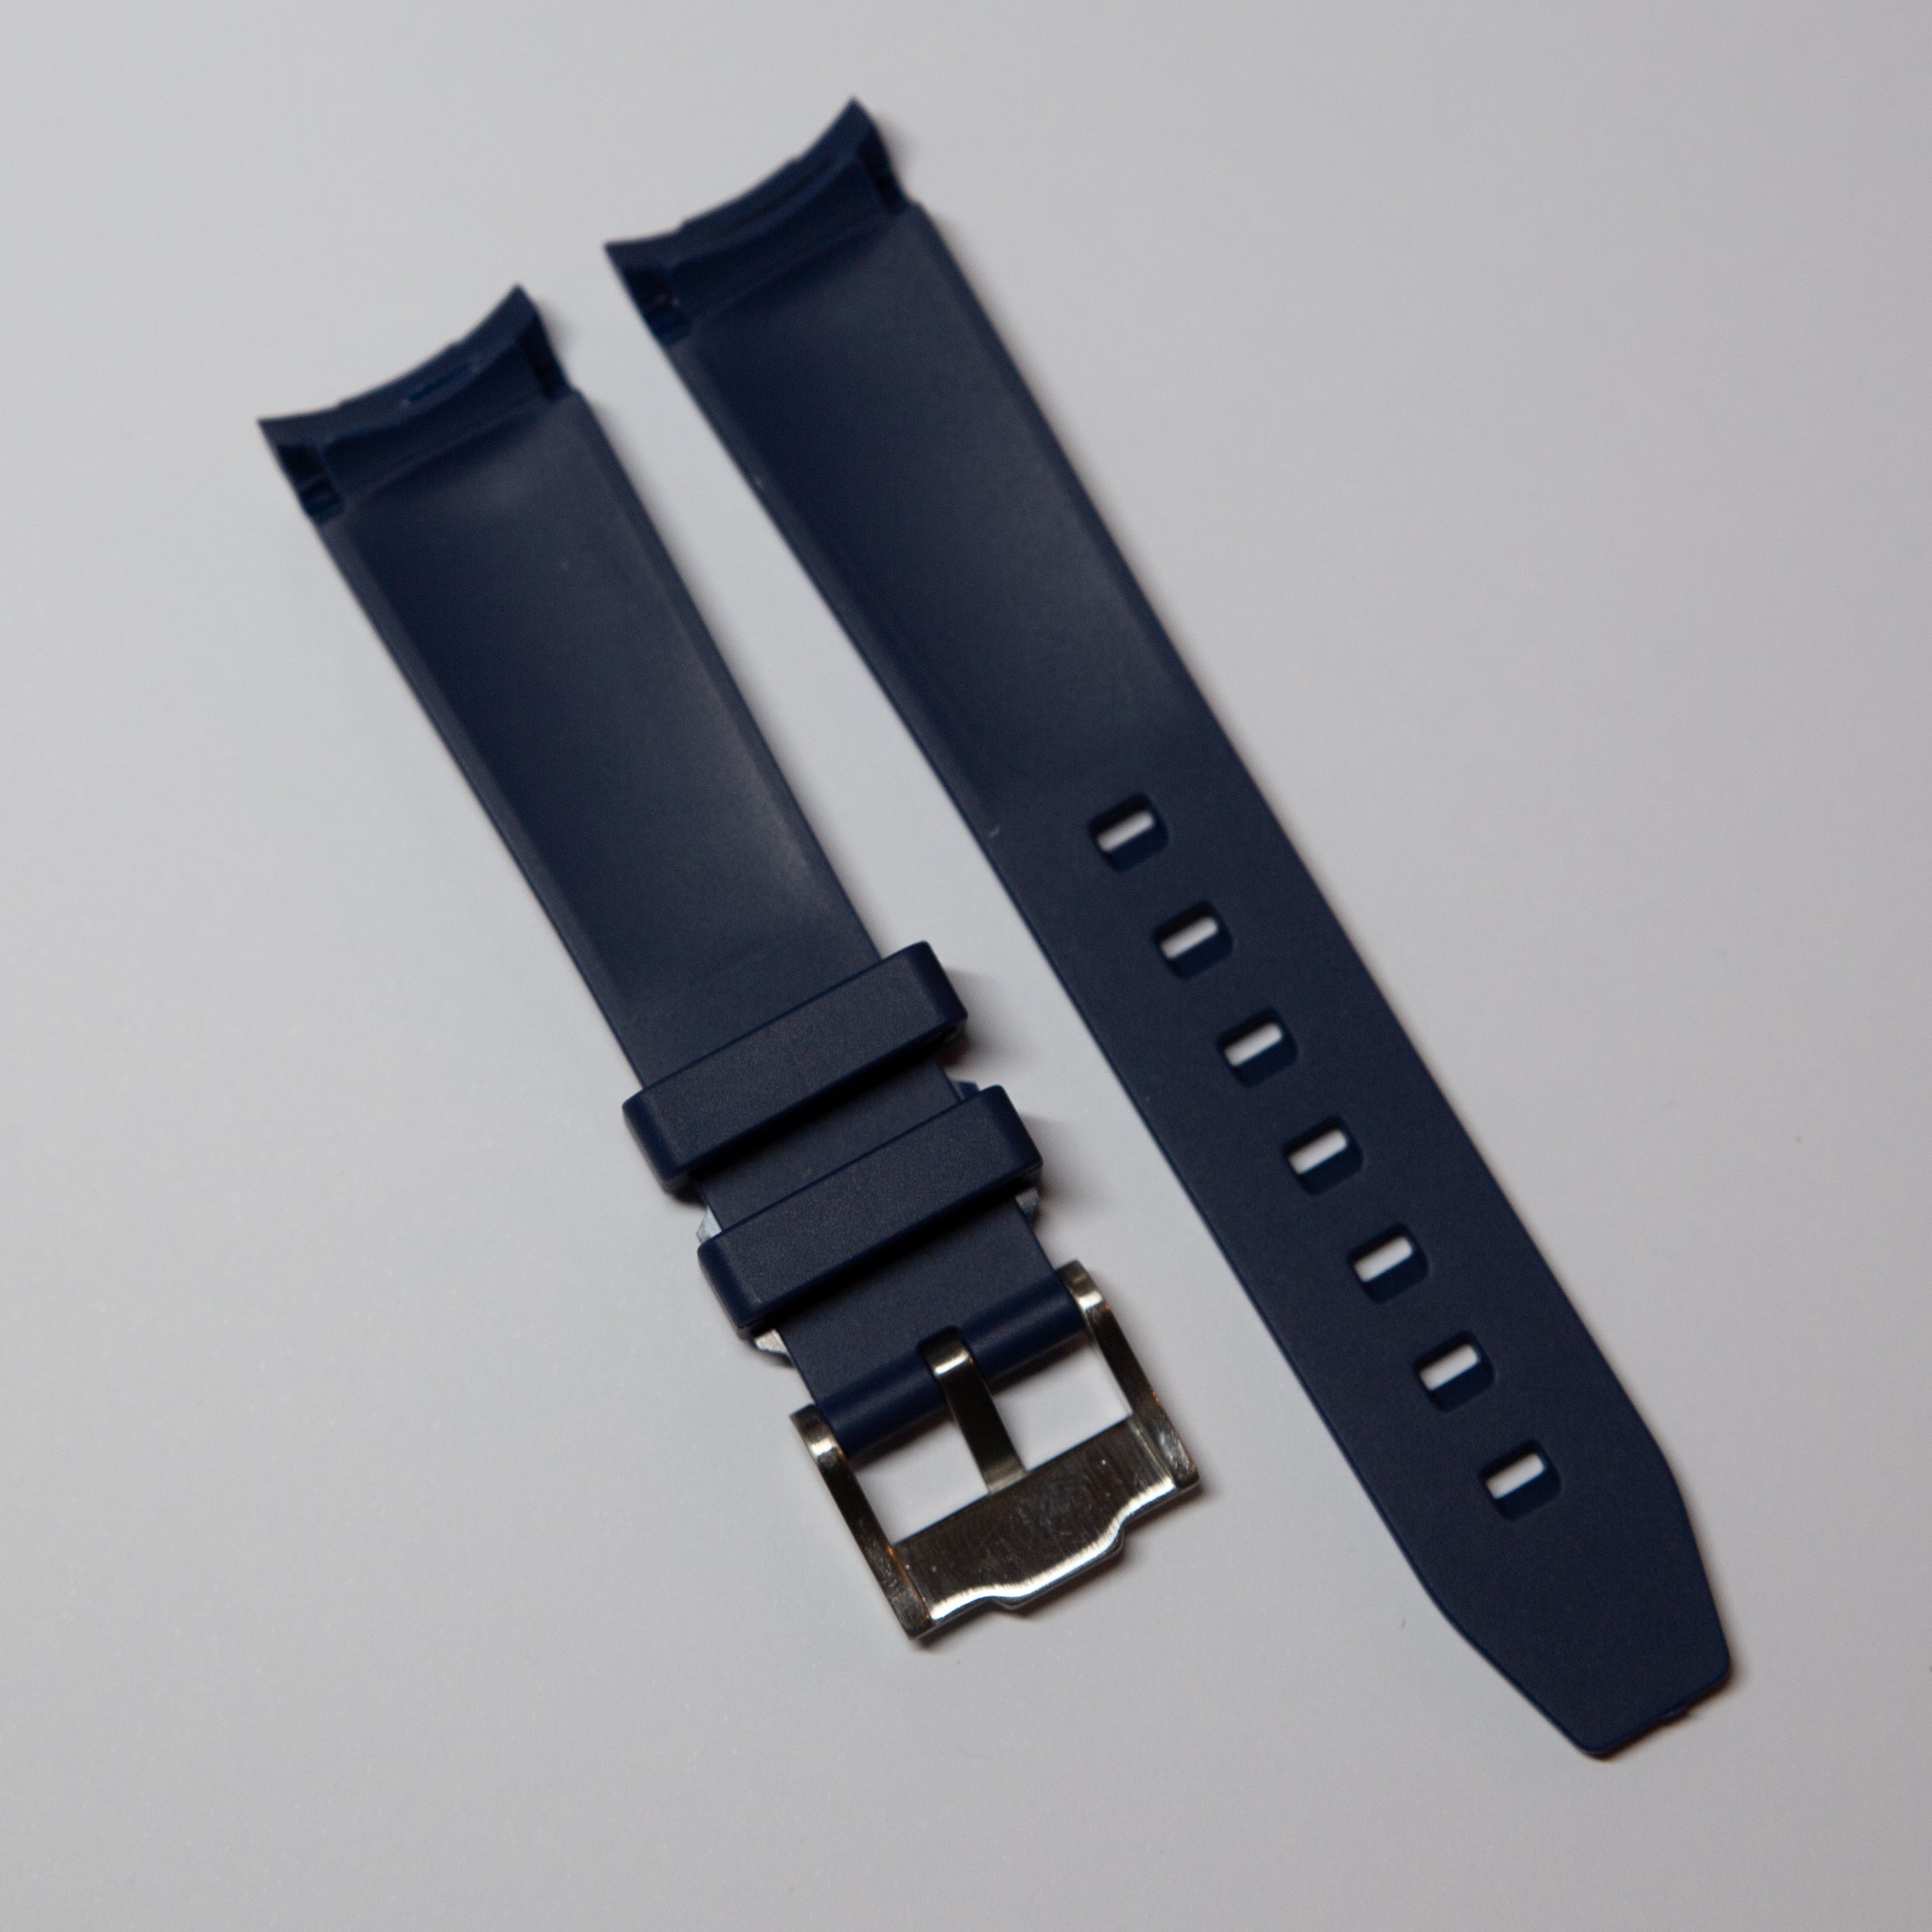 MoonSwatch Luxury Strap Dark Blue